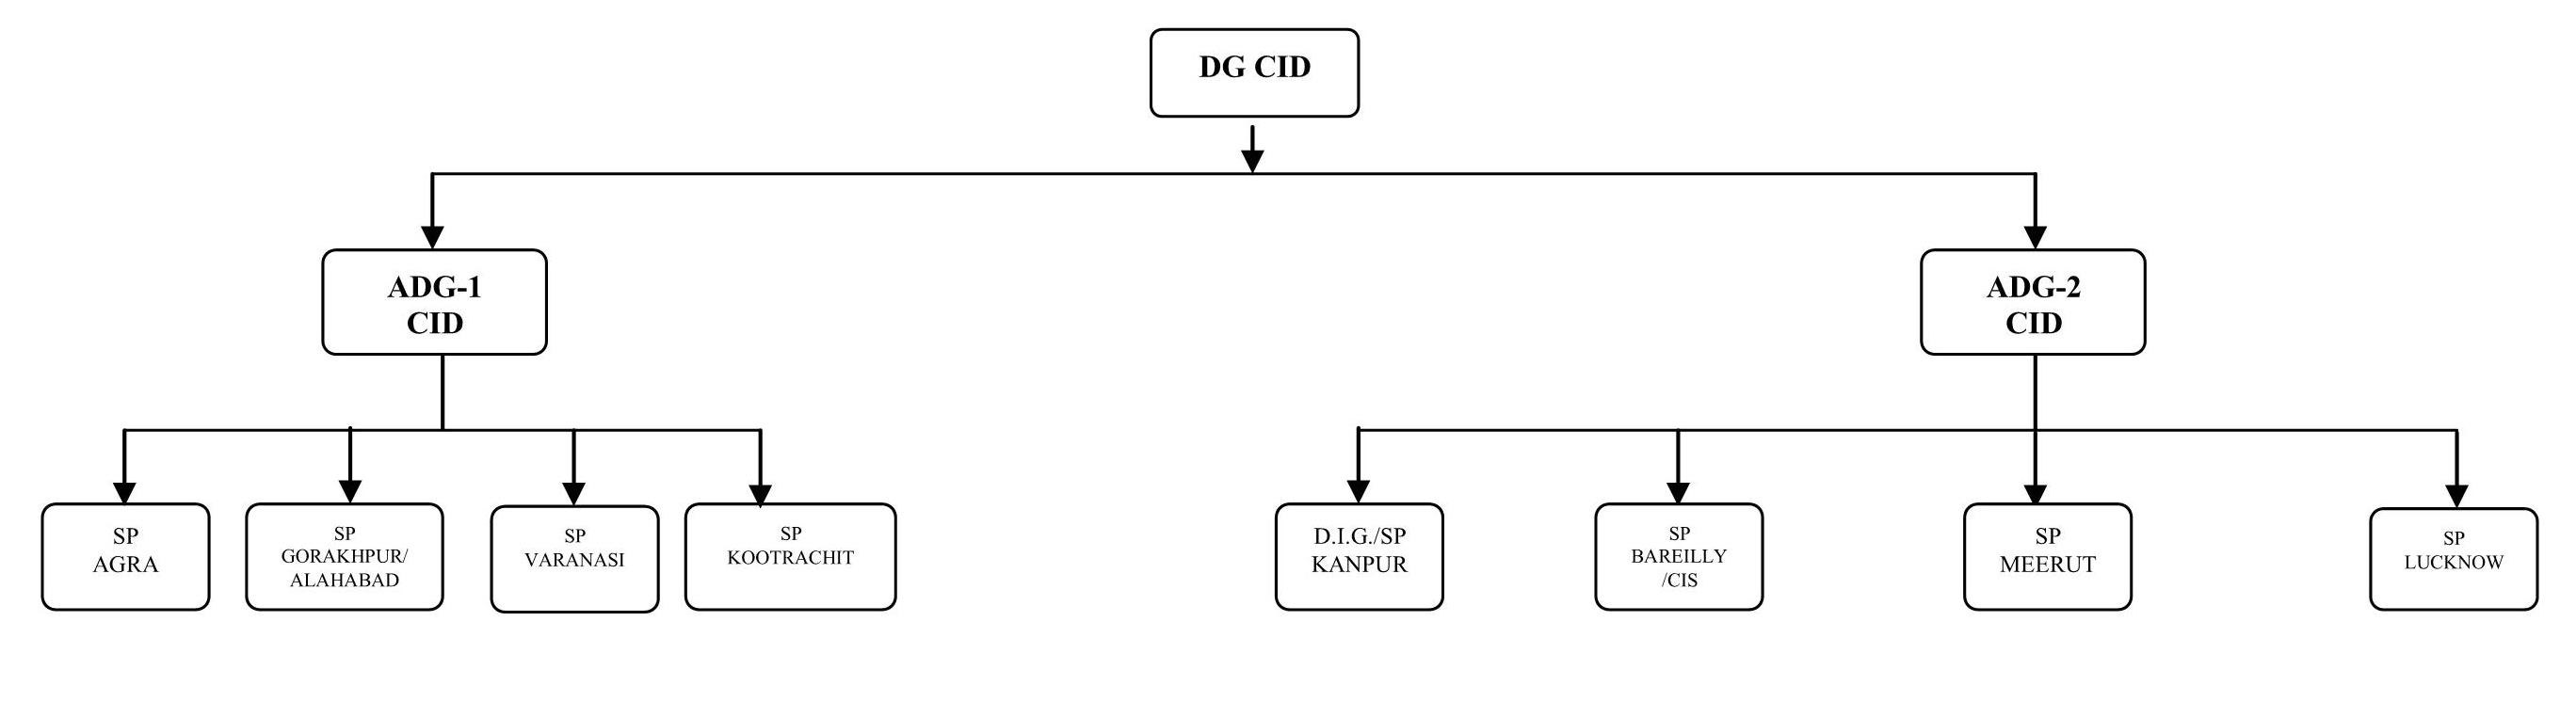 Cid Chart